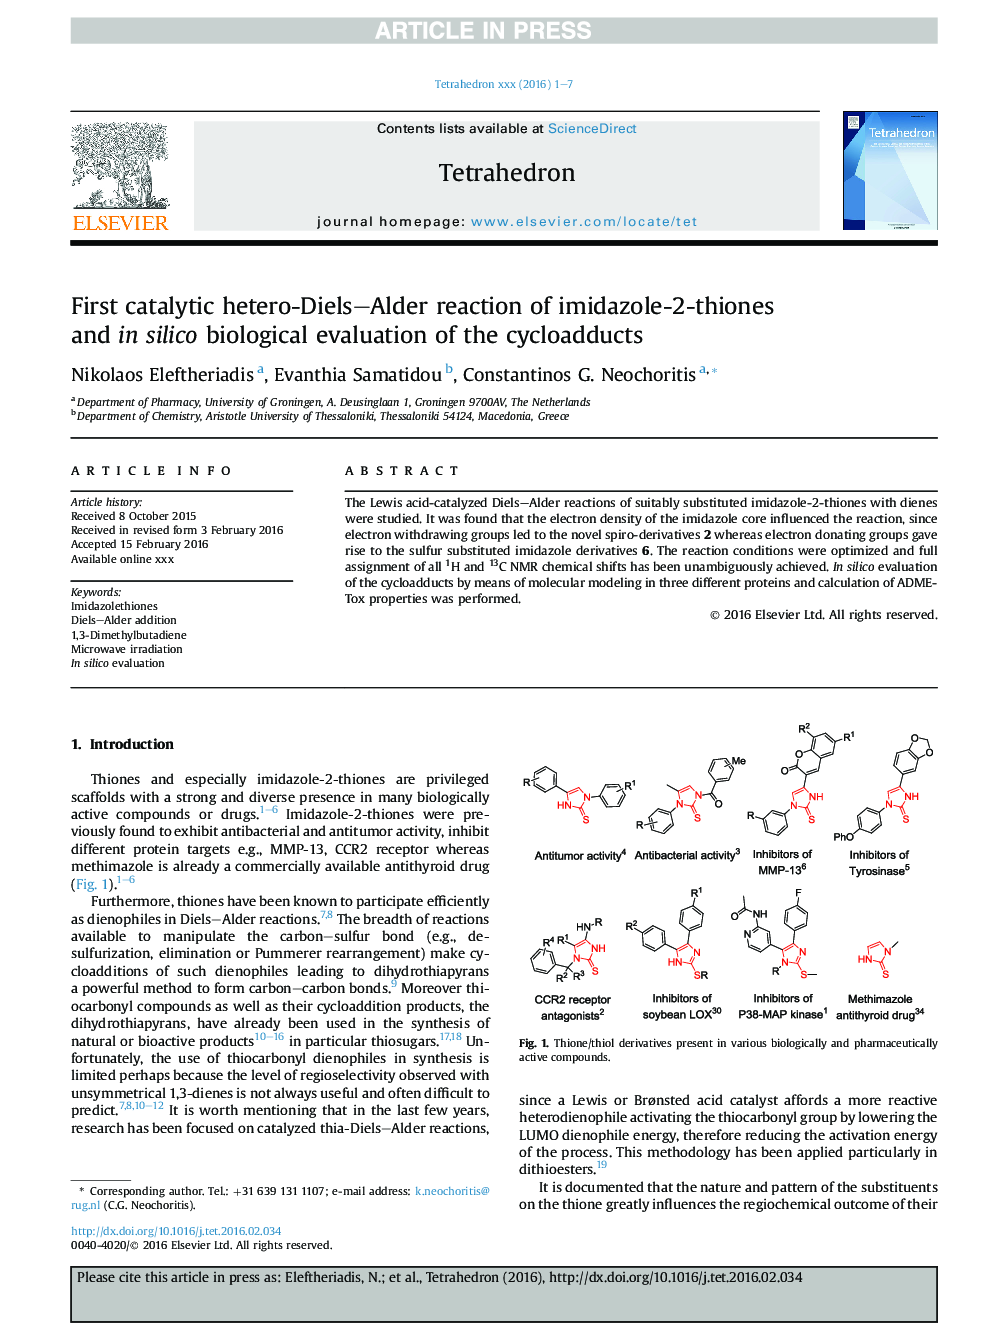 واکنش اول کاتالیزوری هترو دیلز-آلدریم ایزادول 2-تیون ها و در ارزیابی بیولوژیکی سیکلوکود 